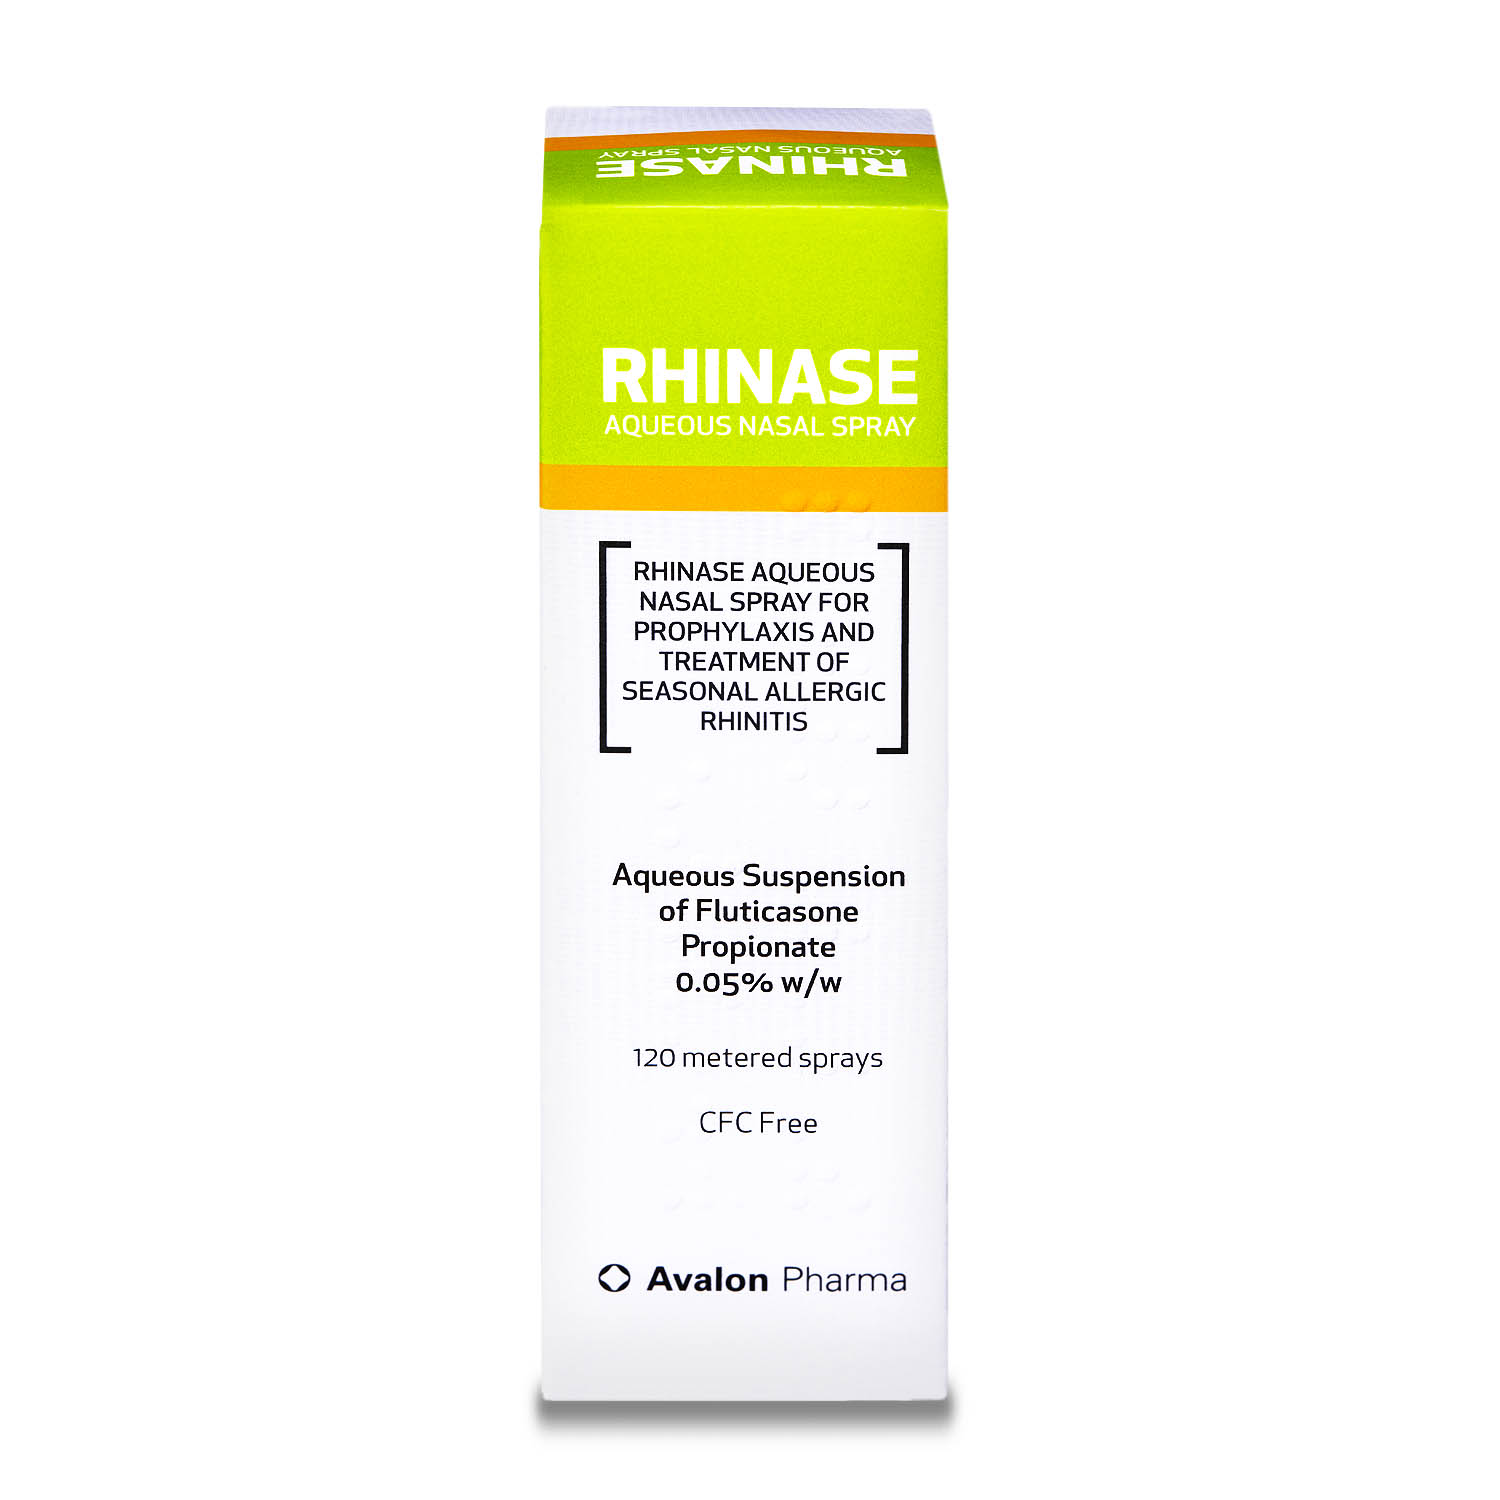 Rhinase Aqueous Nasal Spray